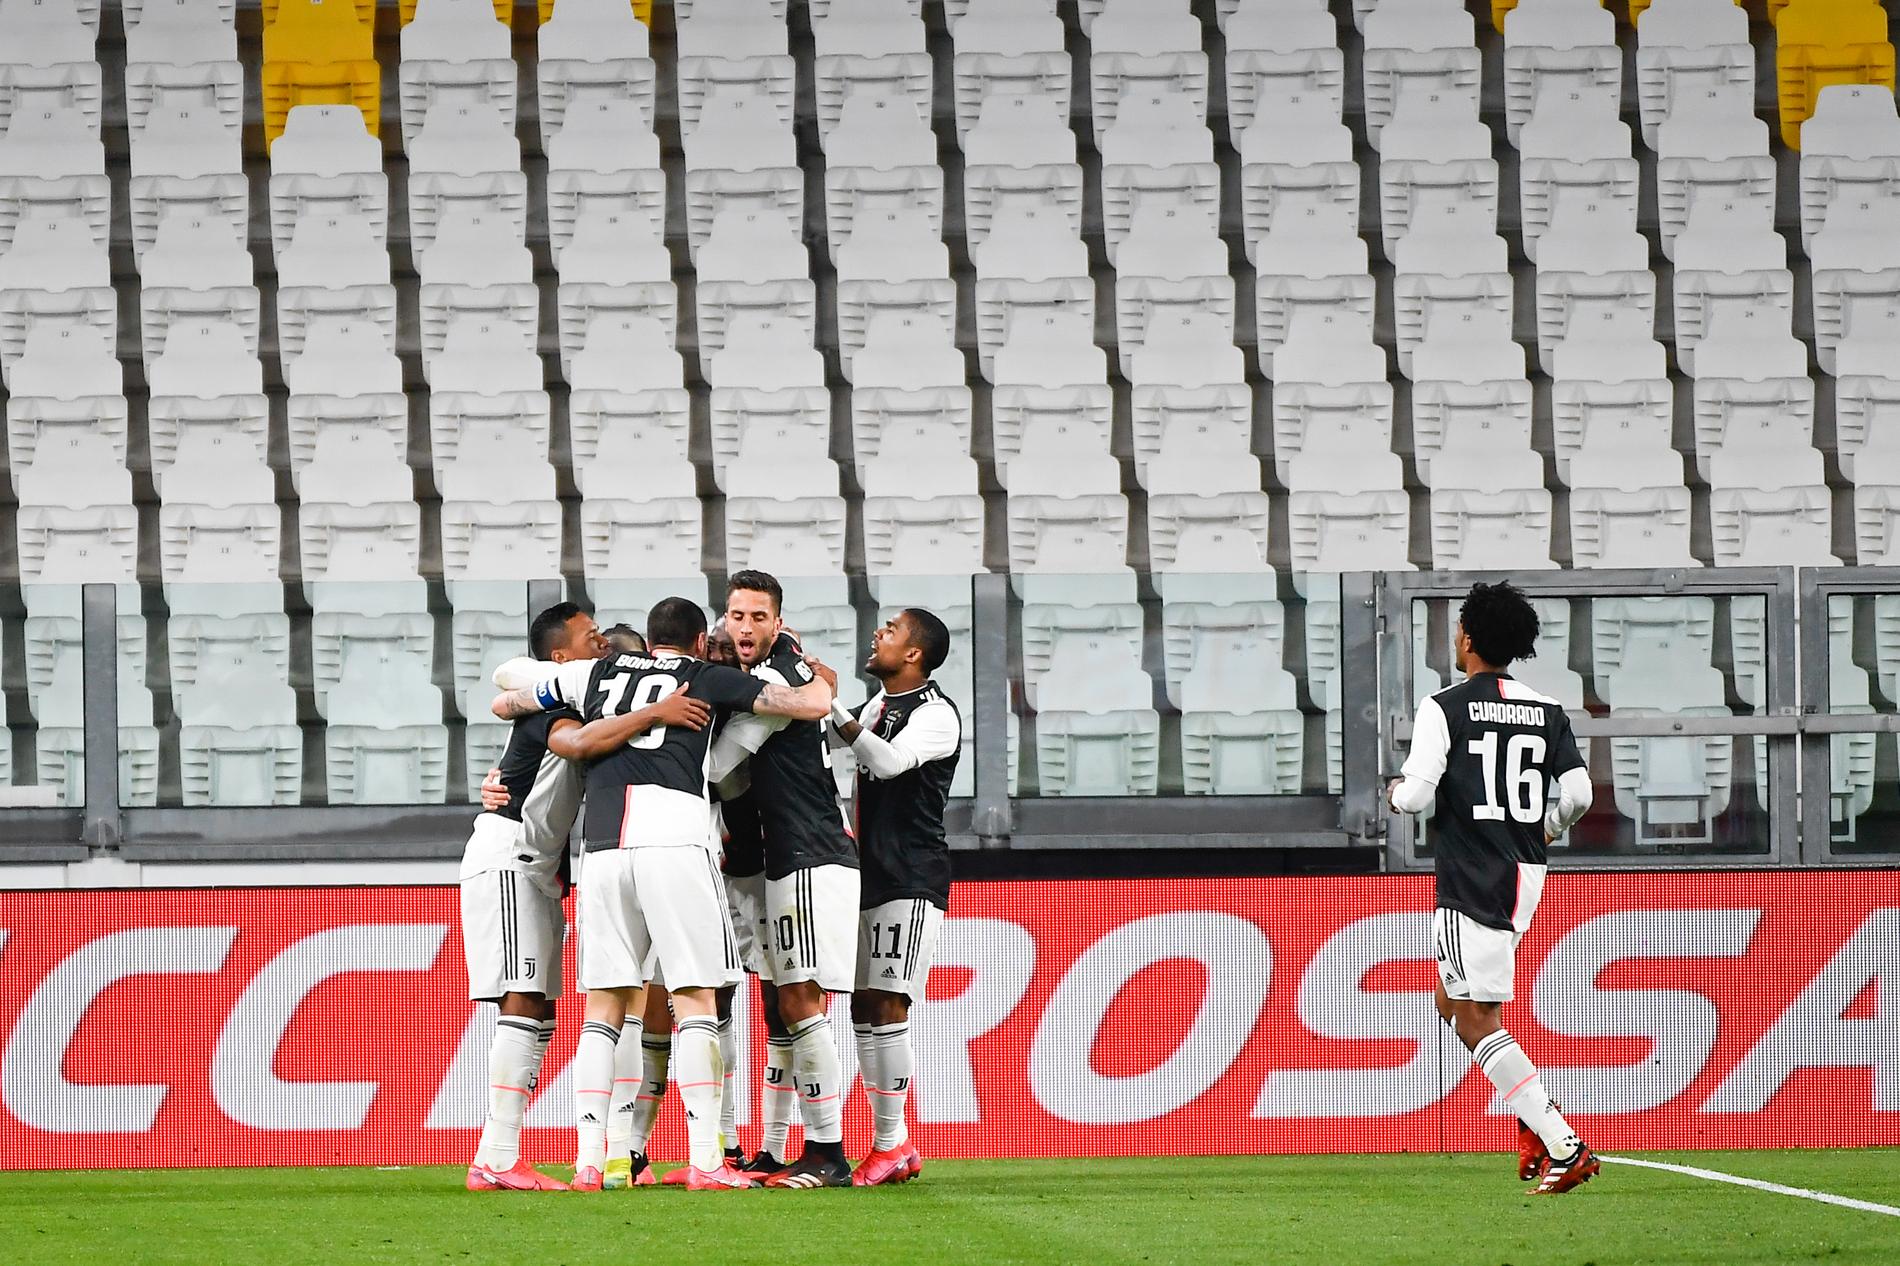 Juventus firade Aaron Ramseys 1–0-mål mot Inter inför tomma stolar på läktaren.